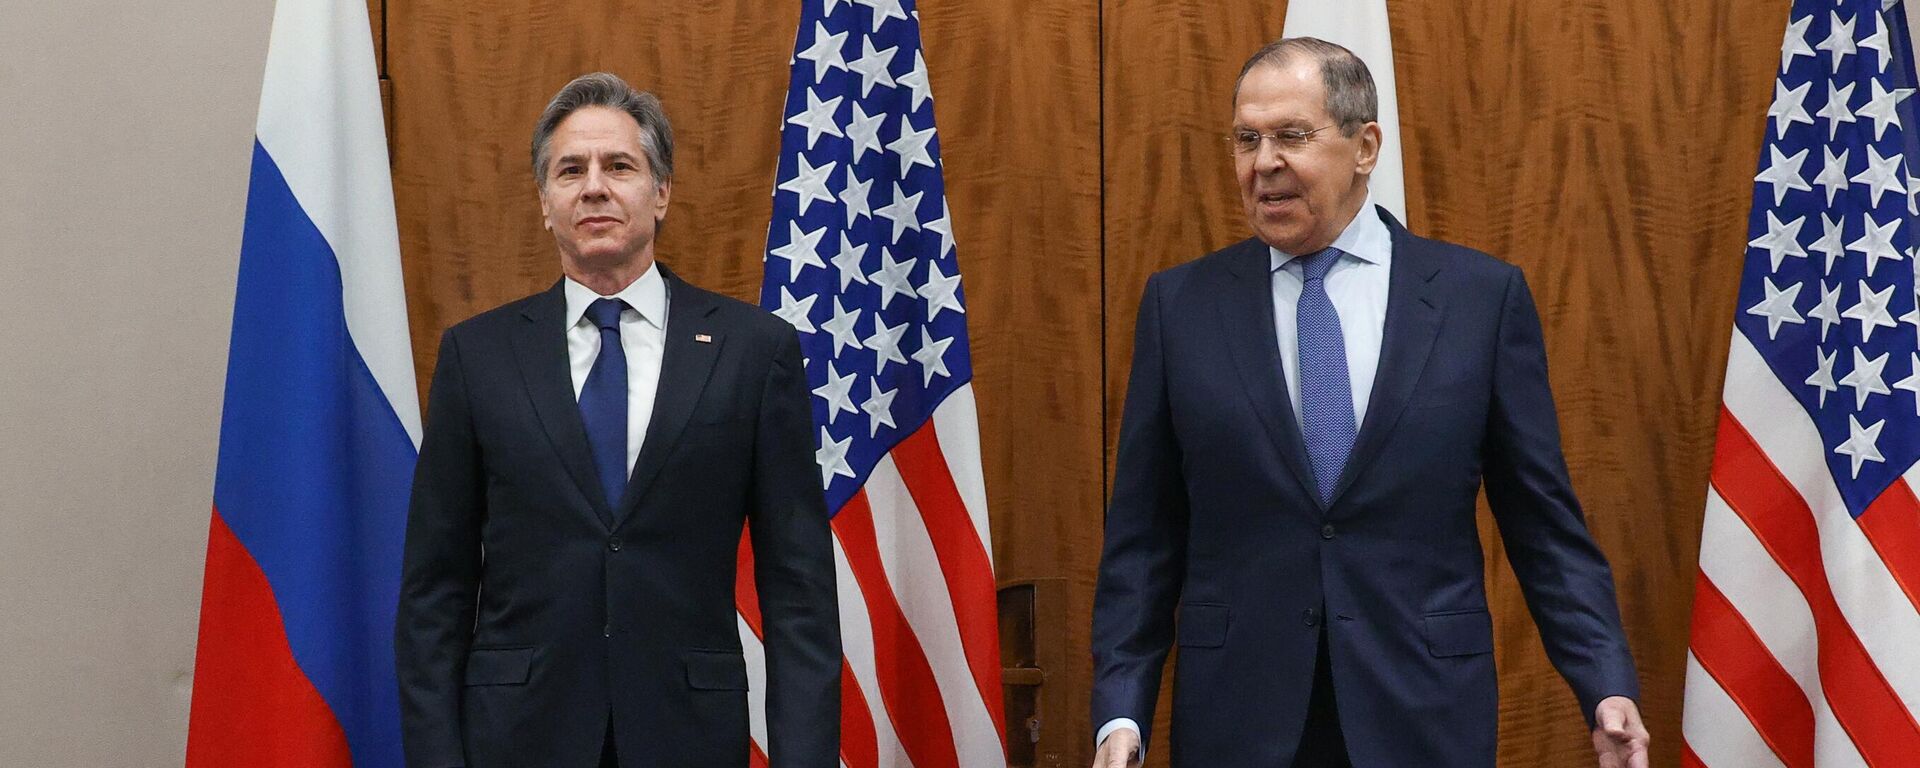 El ministro de Asuntos Exteriores de Rusia, Serguéi Lavrov, y su homólogo estadounidense, Antony Blinken - Sputnik Mundo, 1920, 21.01.2022